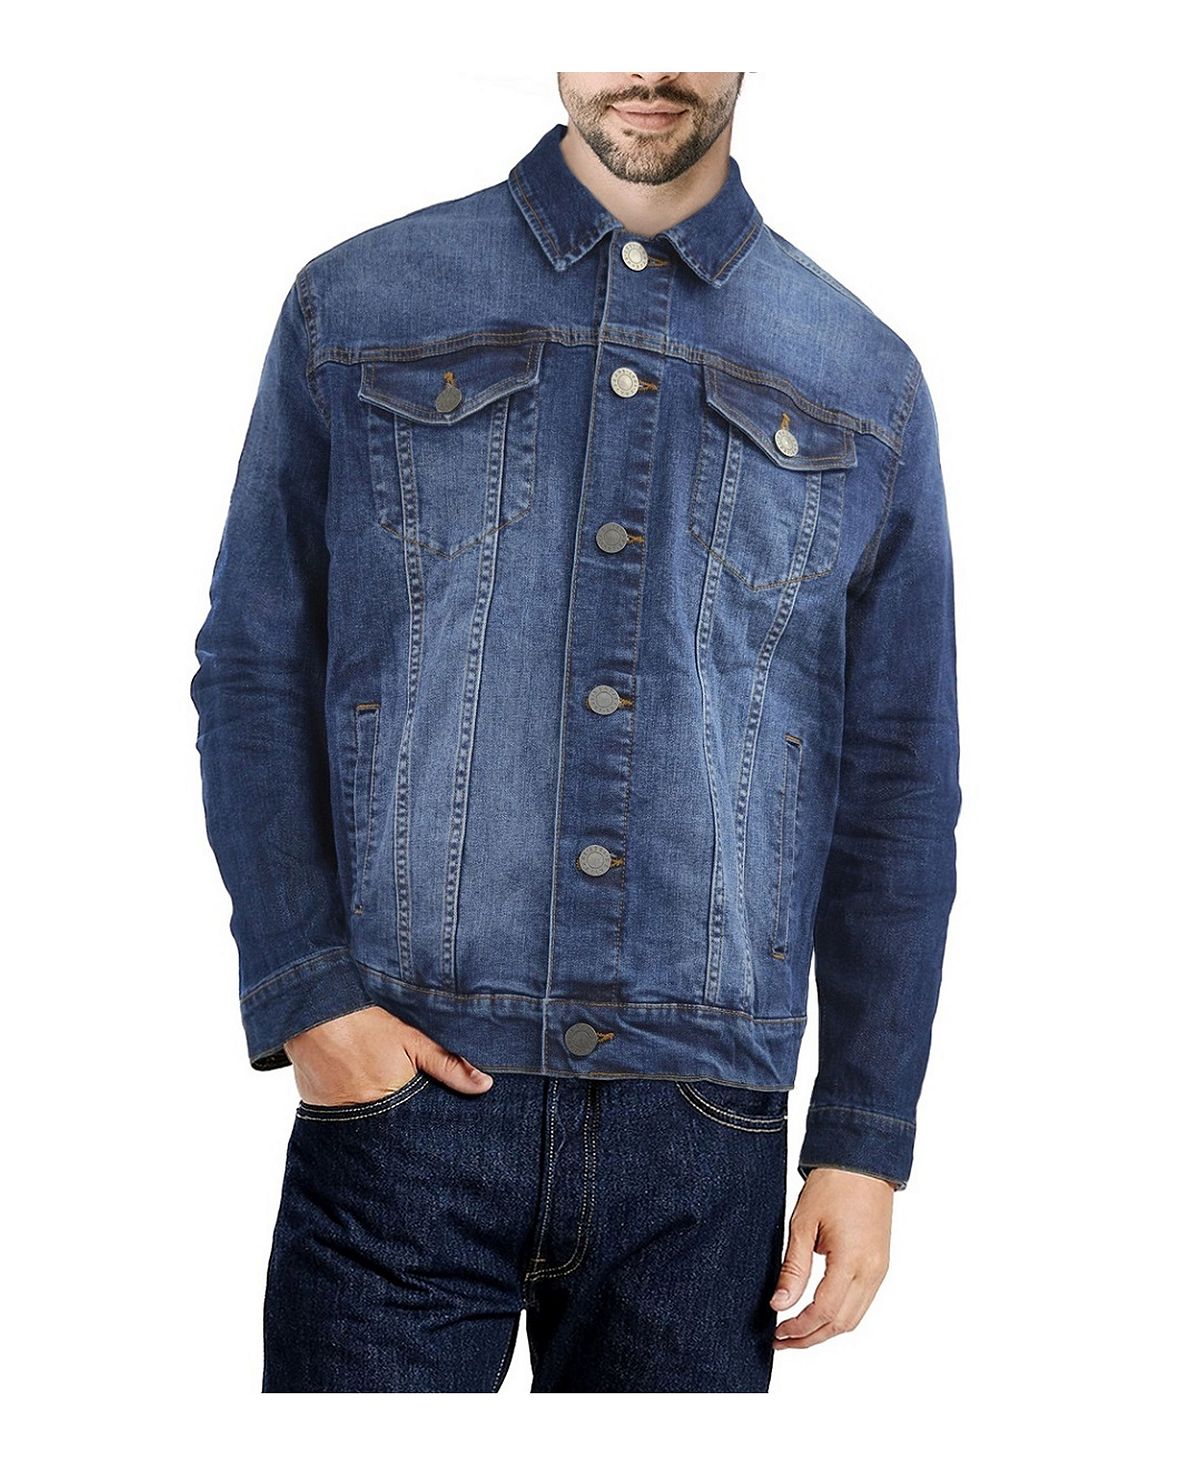 мужская хлопковая приталенная джинсовая куртка новая весенняя мужская повседневная джинсовая куртка мужские джинсовые куртки высококач Мужская приталенная джинсовая куртка с эффектом потертости X-Ray